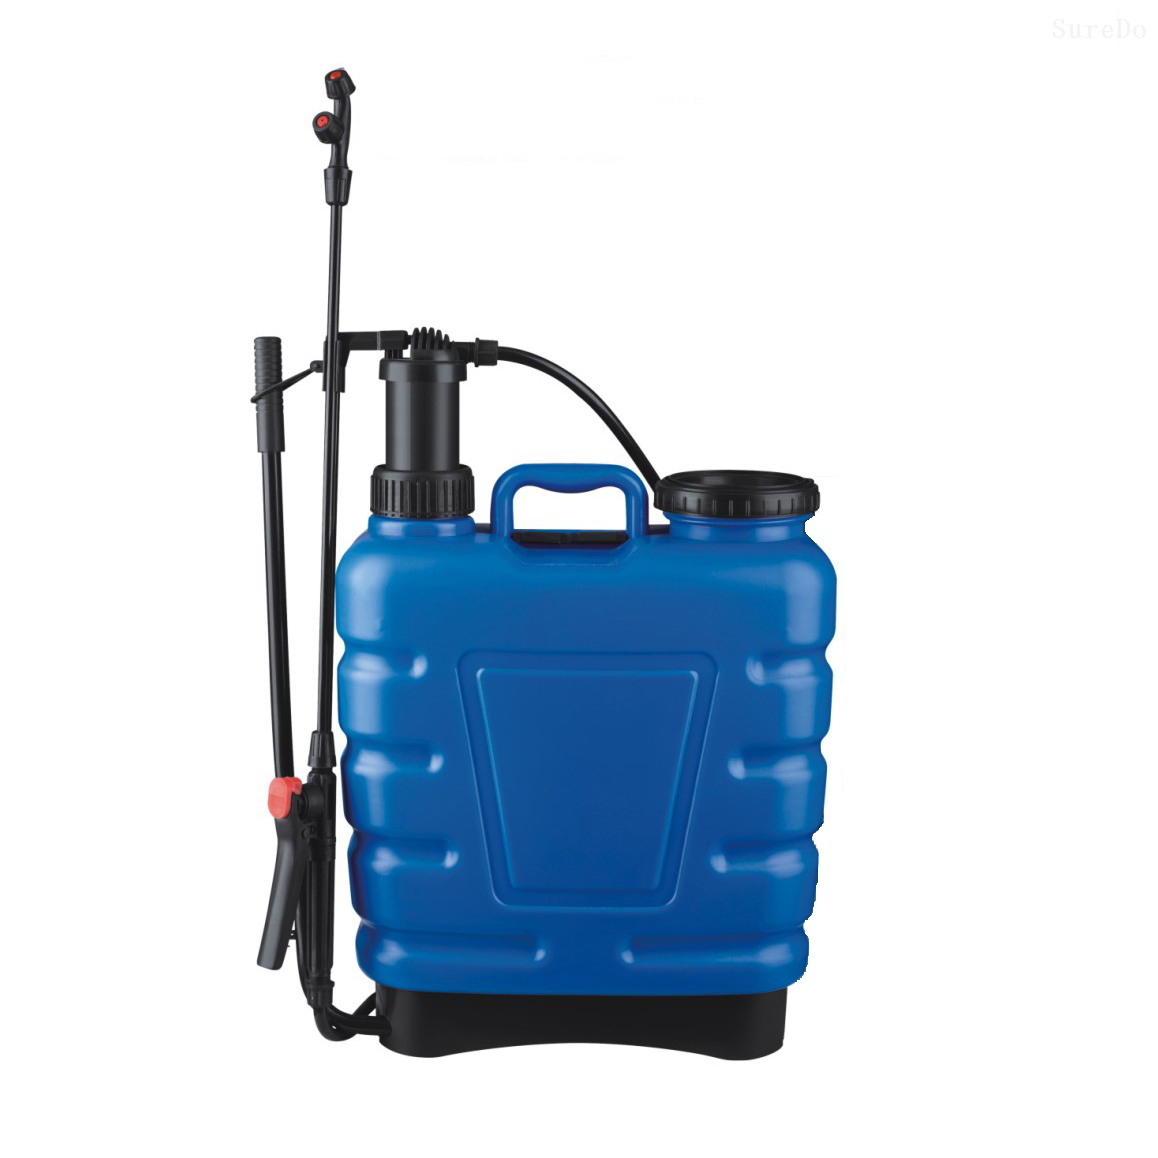 Meitai Knapsack Sprayer — 4-Gallon Capacity